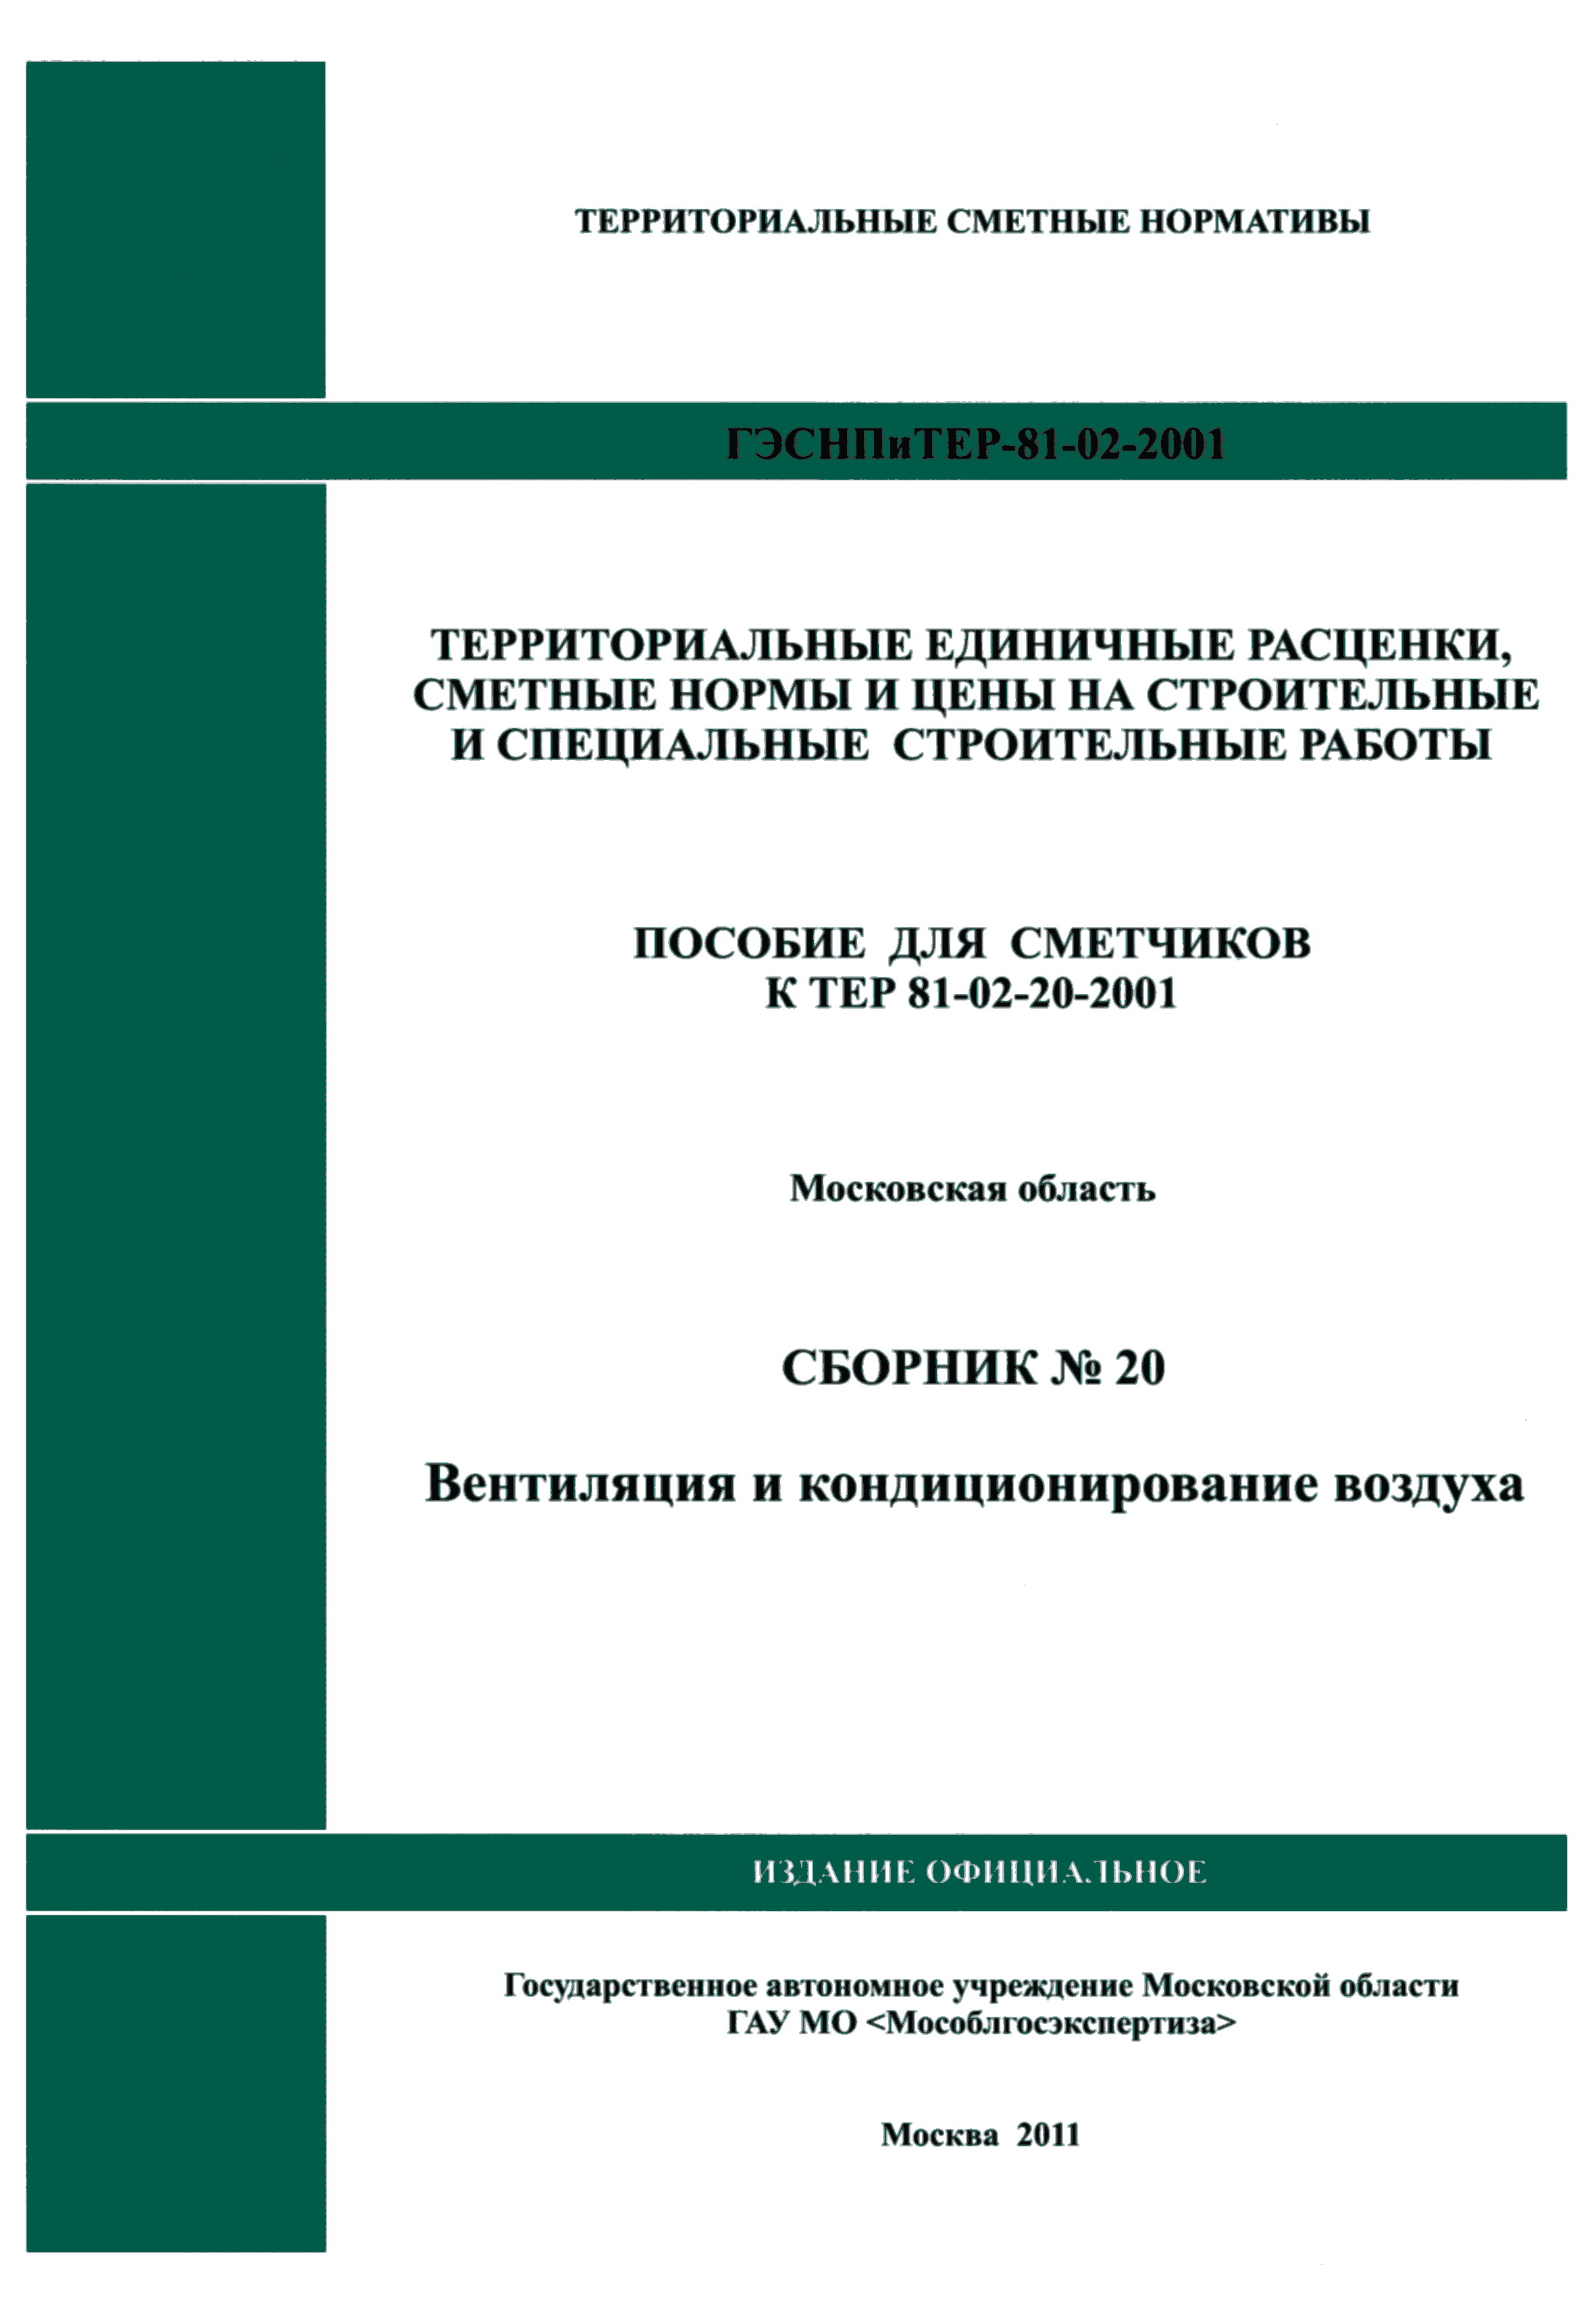 ГЭСНПиТЕР 2001-20 Московской области